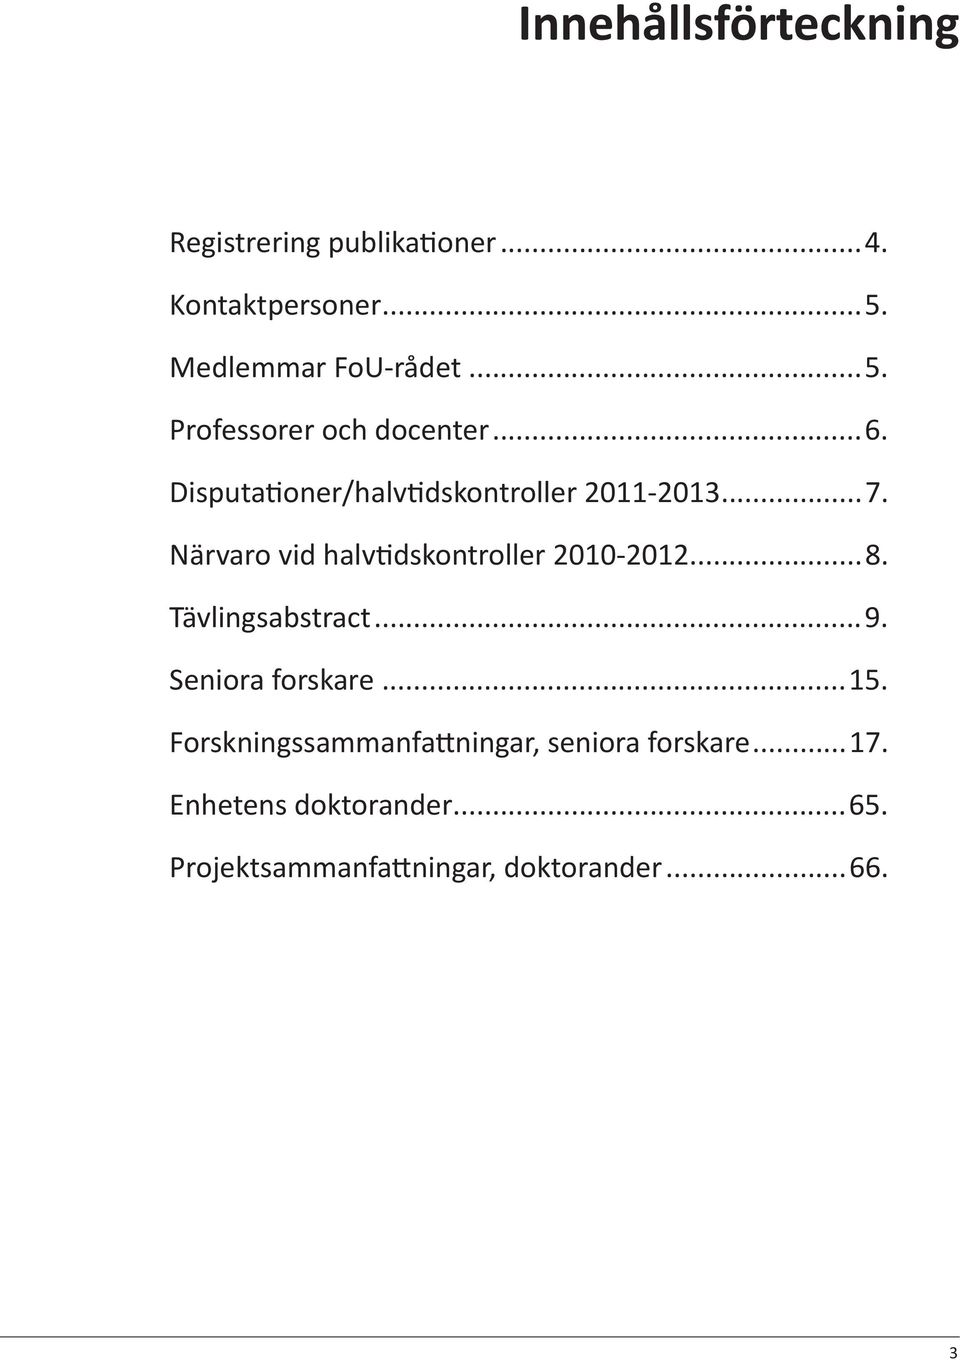 ..7. Närvaro vid halv dskontroller 2010-2012...8. Tävlingsabstract...9. Seniora forskare...15.